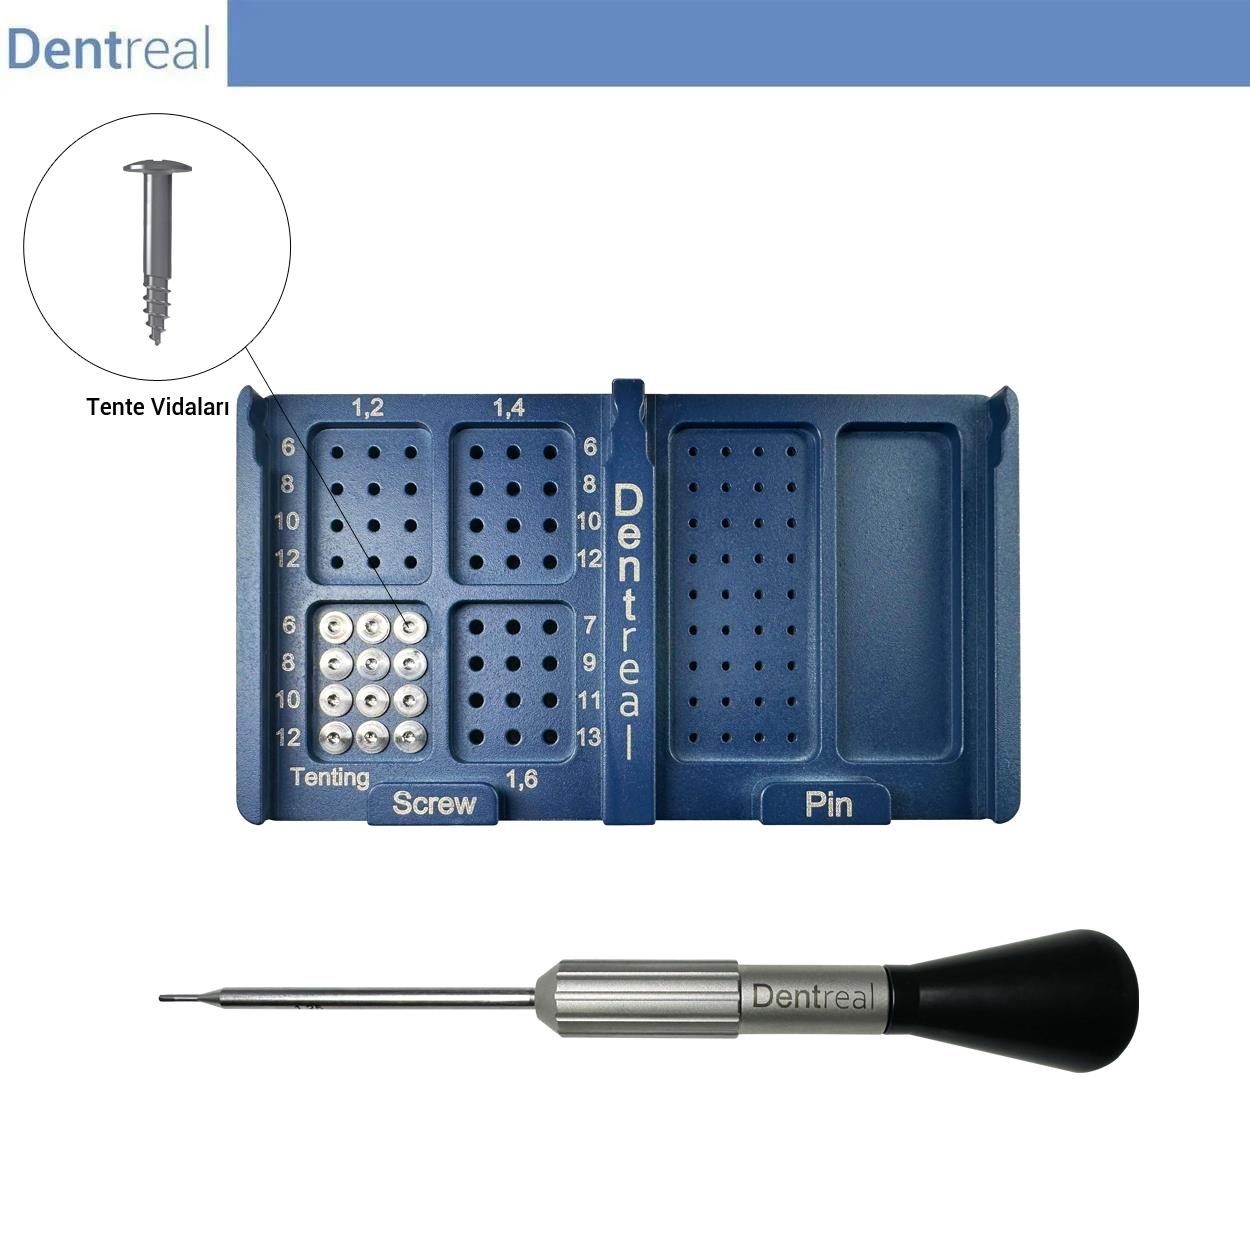 DentrealStore - Dentreal Bonefix GBR Membrane Tenting Screw Kit - Dental Tenting Screw Kit